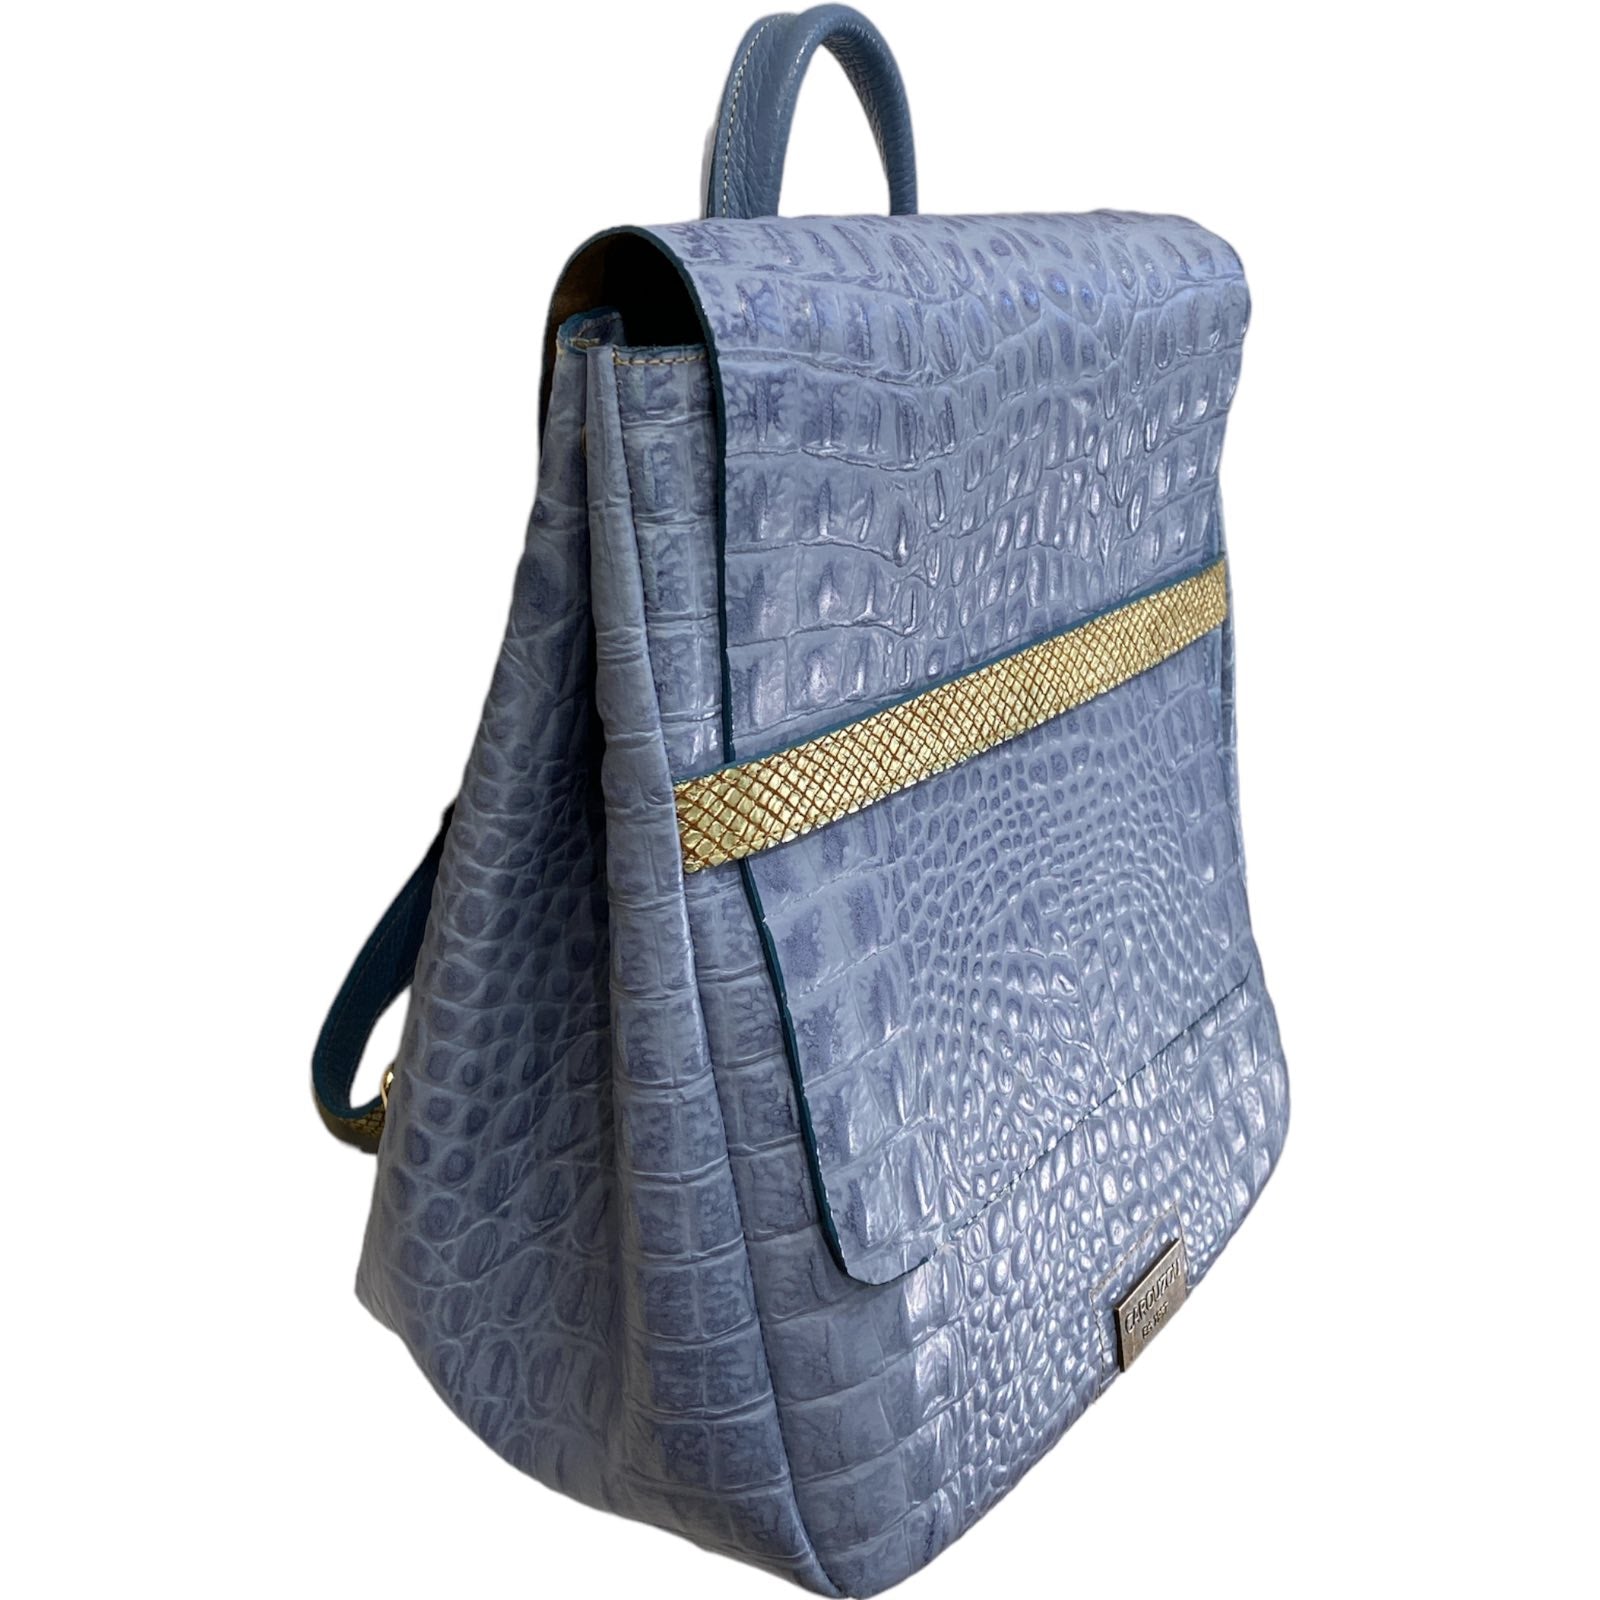 Keira. Raf blue alligator-print leather backpack